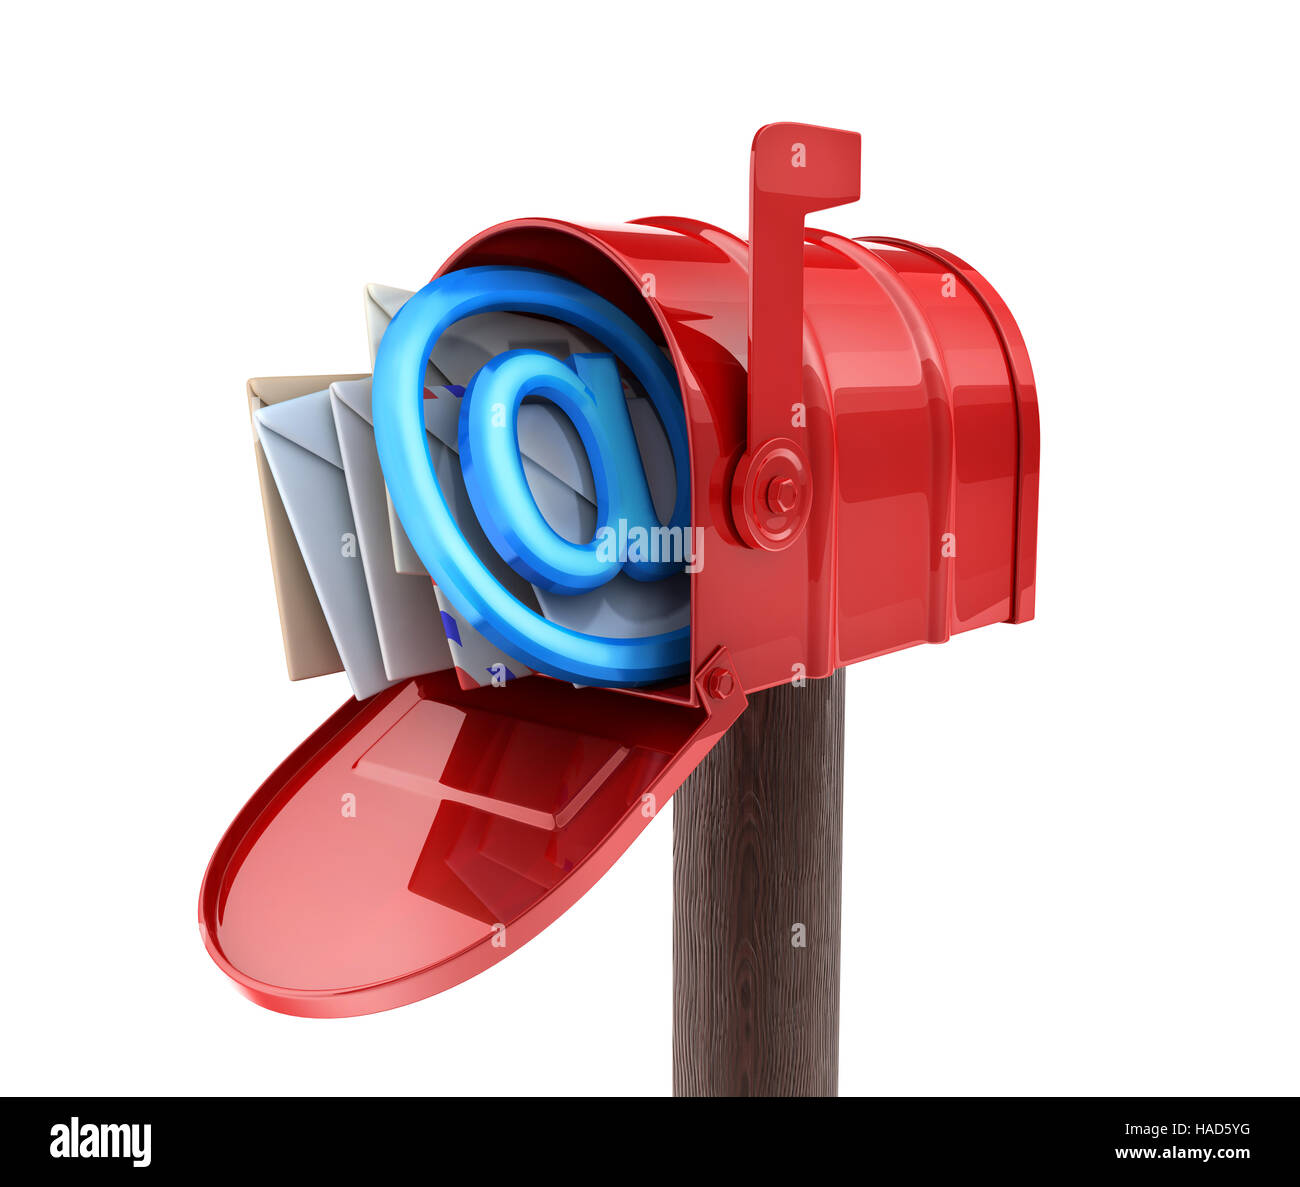 Résumé E-mail boîte aux lettres rouge. 3d illustration Banque D'Images